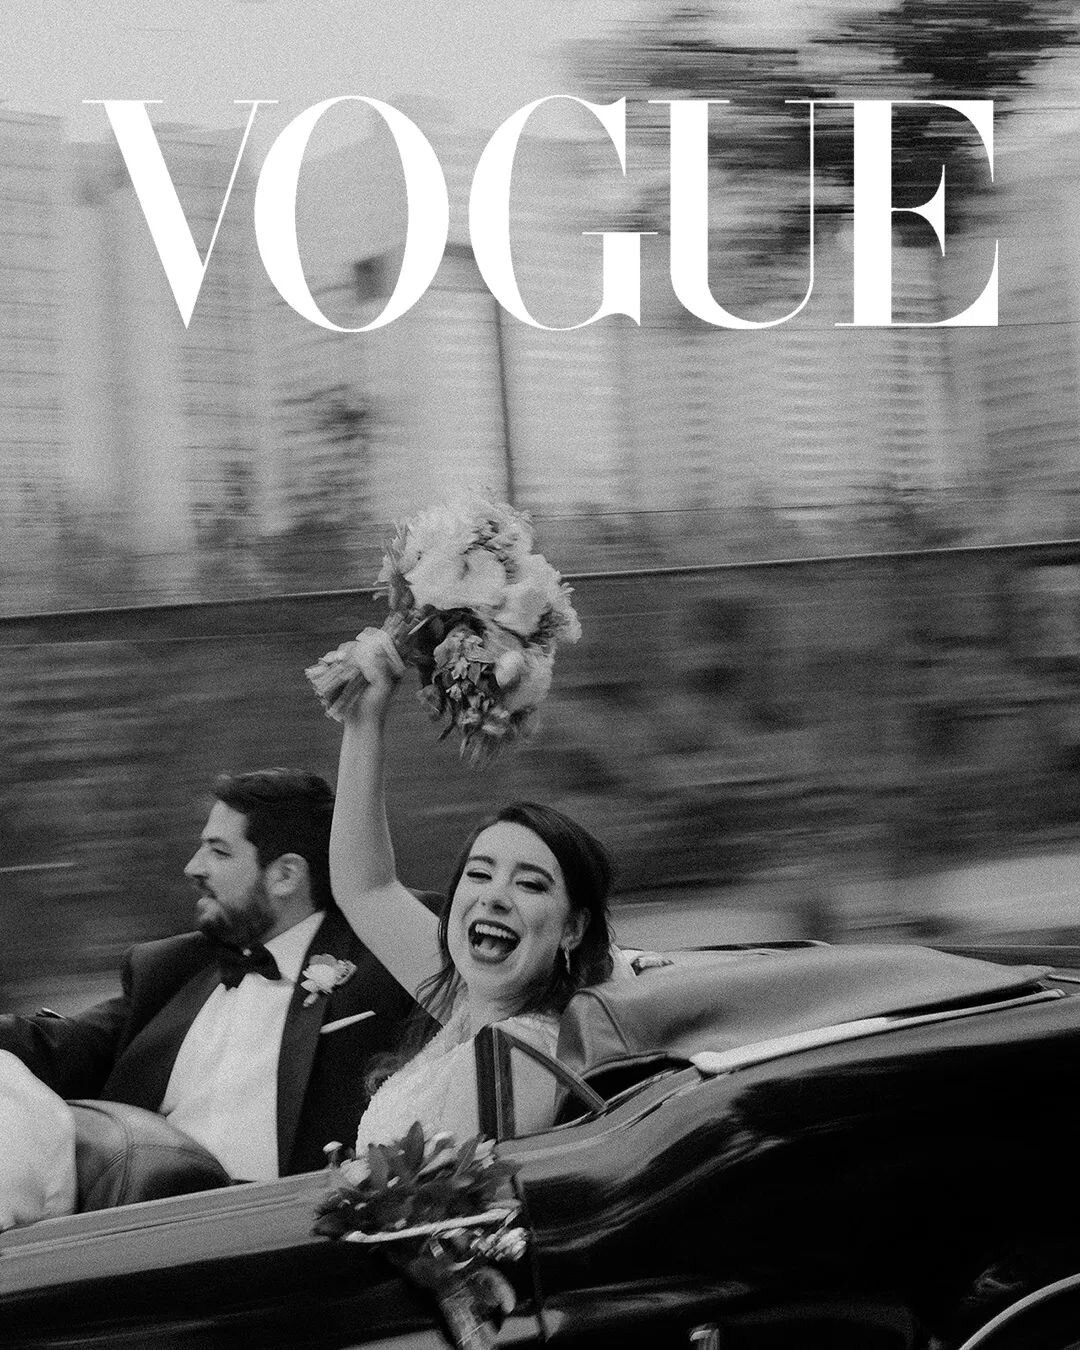 Hoy sali&oacute; Vogue Septiembre, uno de los n&uacute;meros&nbsp;m&aacute;s importantes del a&ntilde;o&nbsp;y es un honor ser publicada por segunda vez y&nbsp;formar parte de &quot;Ever After&quot; en Vogue Print y digital!

Una boda de cuento. Andy